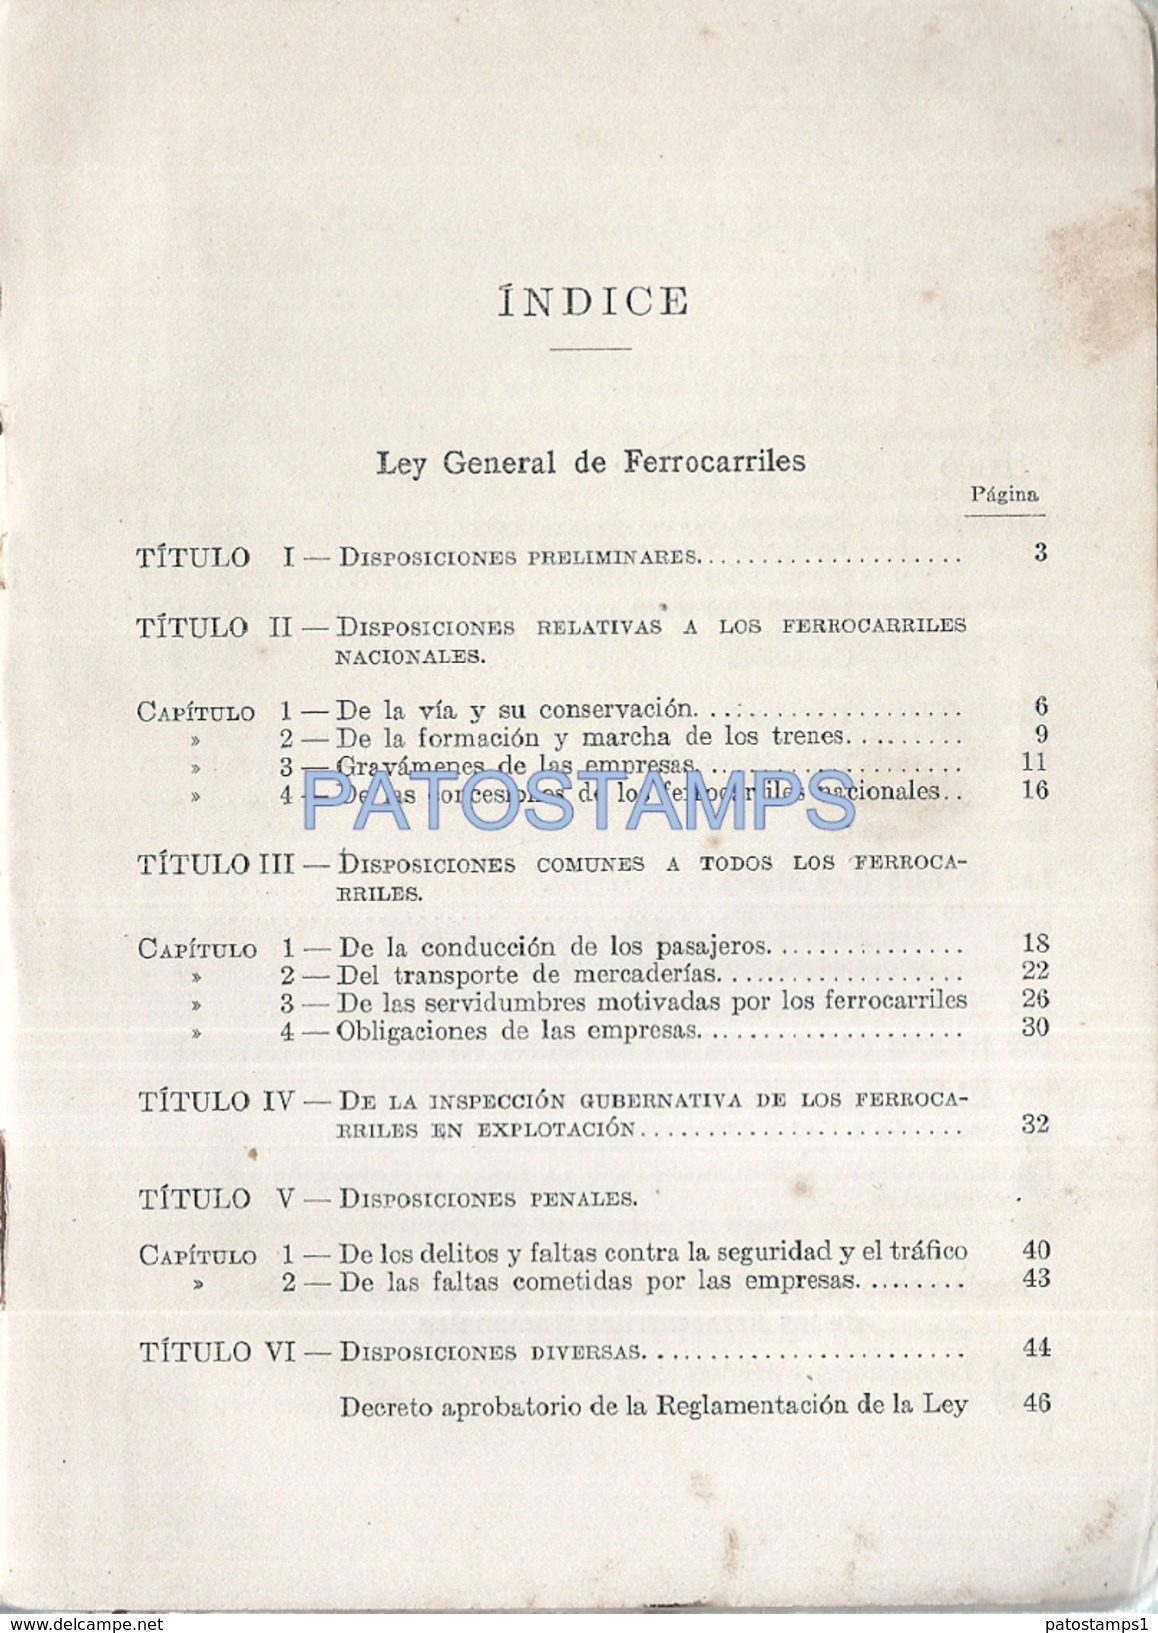 73597 ARGENTINA BS AS LEY Y REGLAMENTO DE LOS FERROCARRILES NACIONALES TREN TRAIN 1932 PAG 406 NO POSTAL POSTCARD - Eisenbahnverkehr